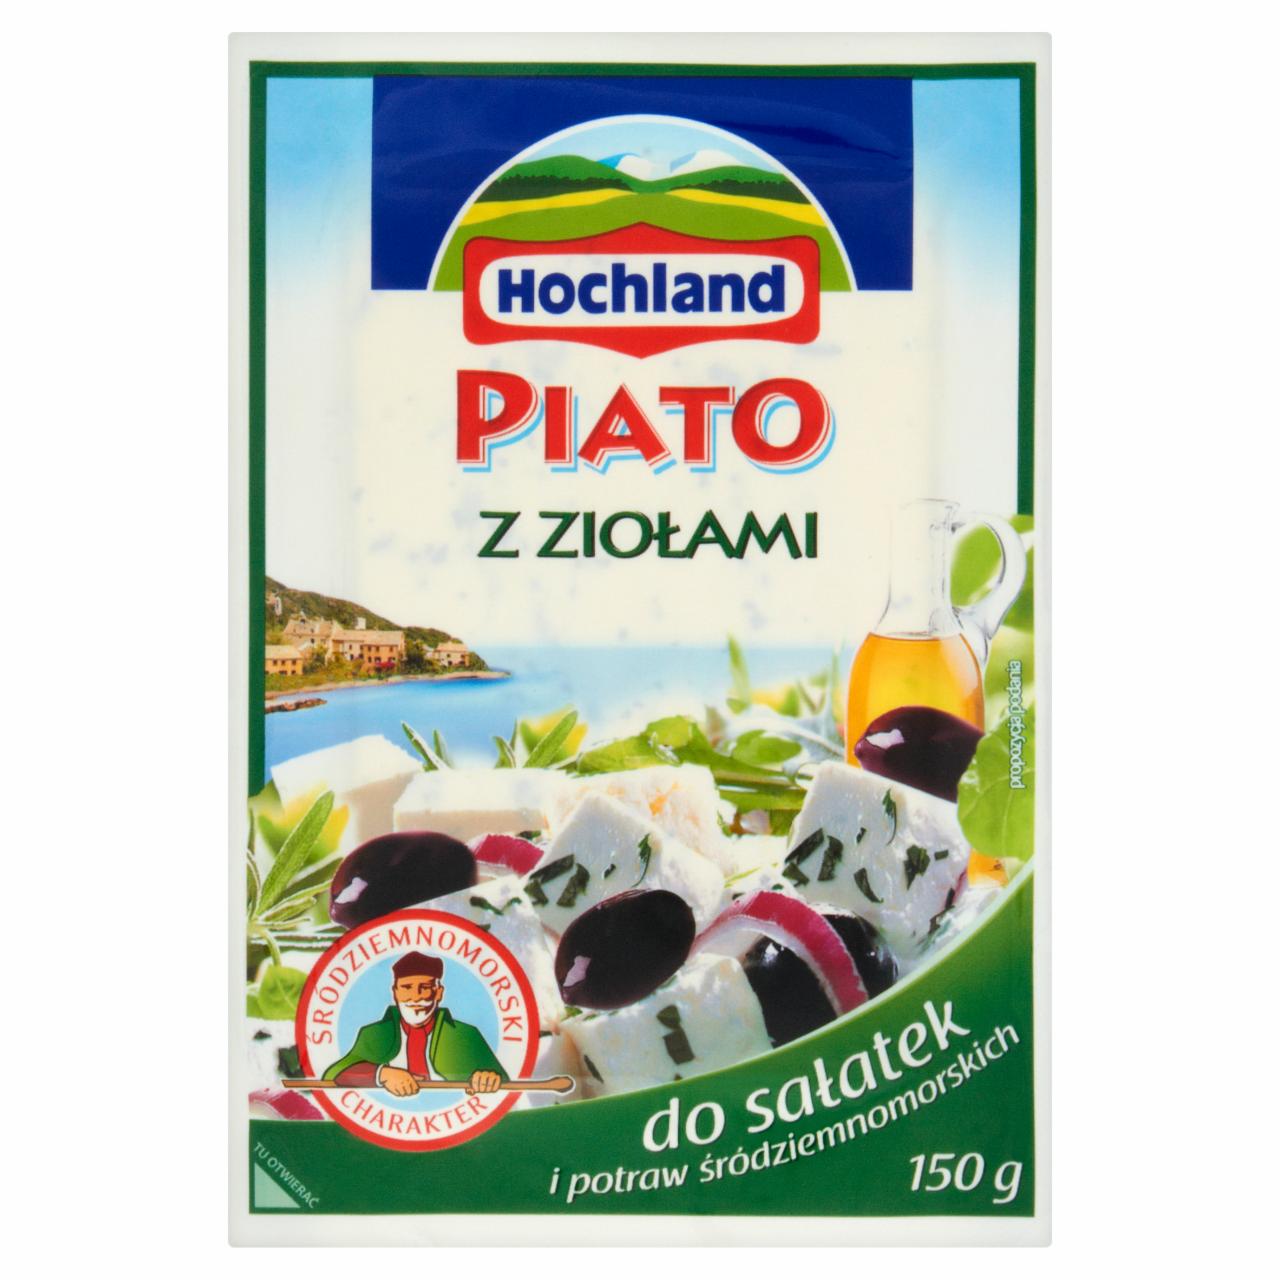 Zdjęcia - Hochland Piato z ziołami Ser solankowy 150 g